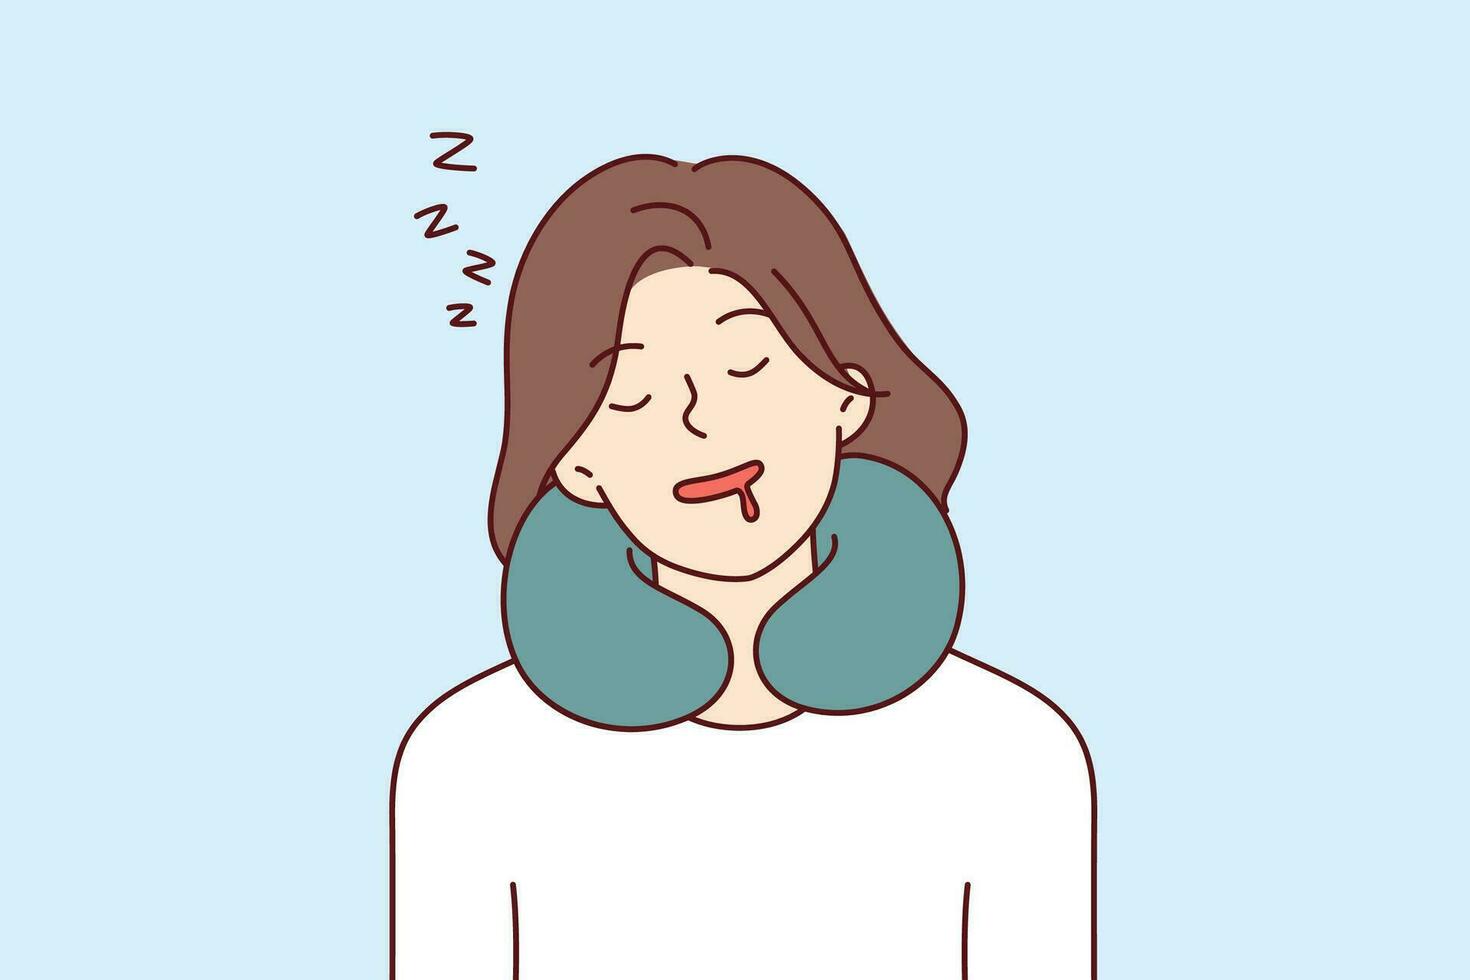 vrouw slaapt gebruik makend van nek hoofdkussen terwijl op reis en ervaringen comfort bedankt naar reizen kussen vector